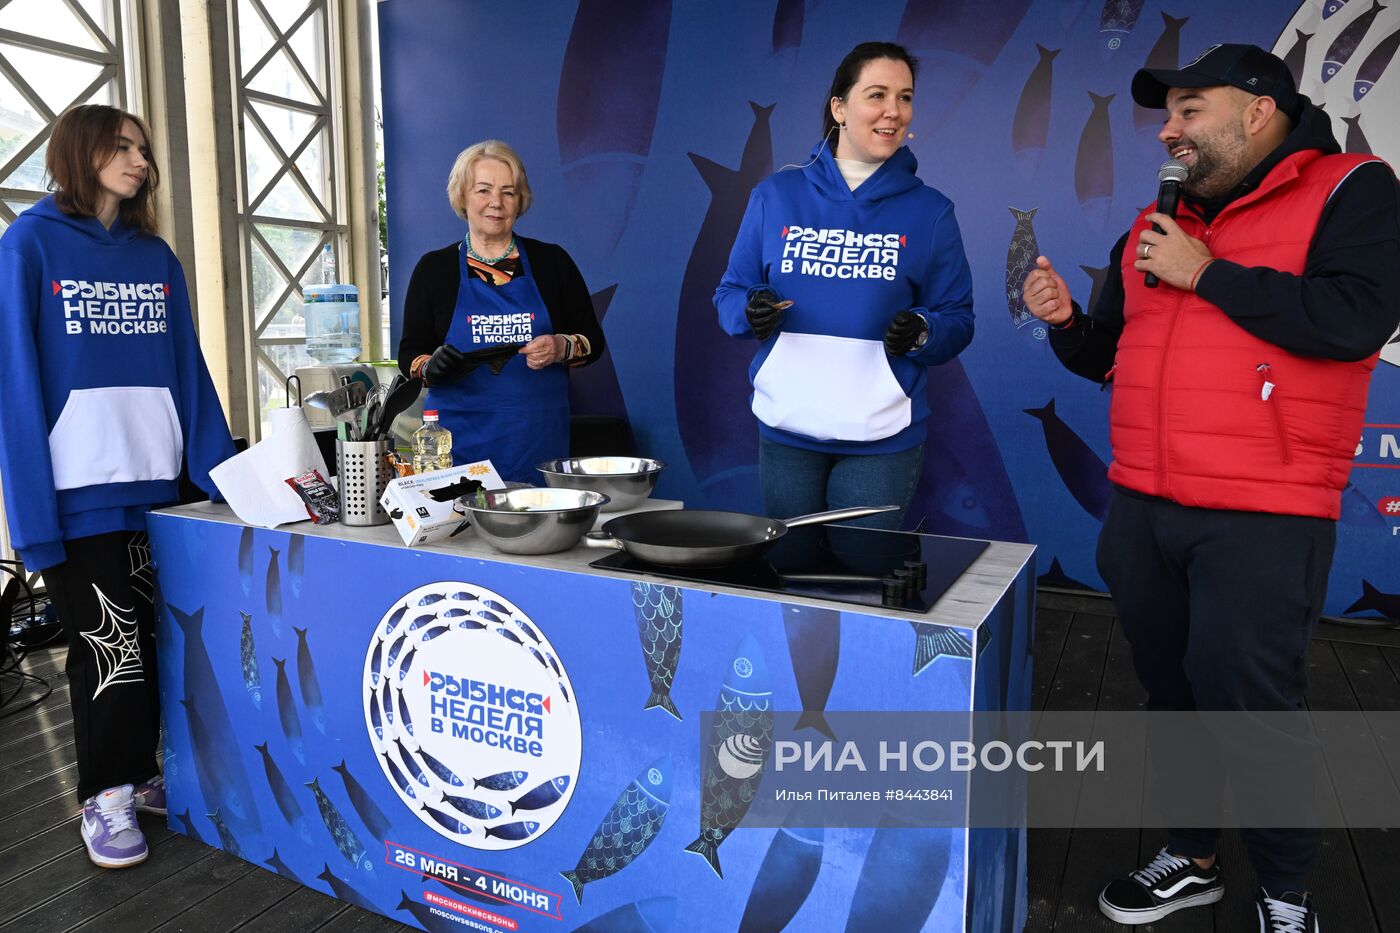 Гастрономический фестиваль "Рыбная неделя" в Москве